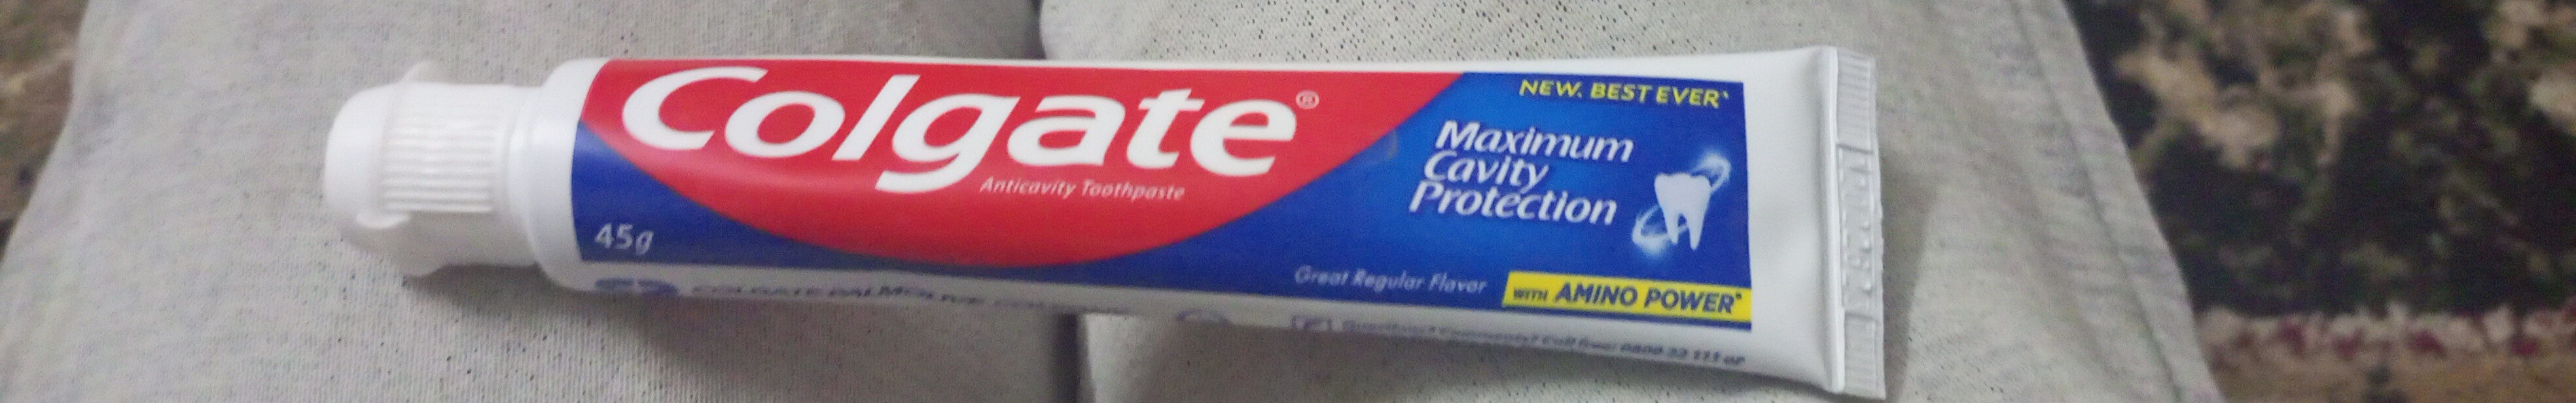 Colgate anticavity toothpaste - Tuote - en